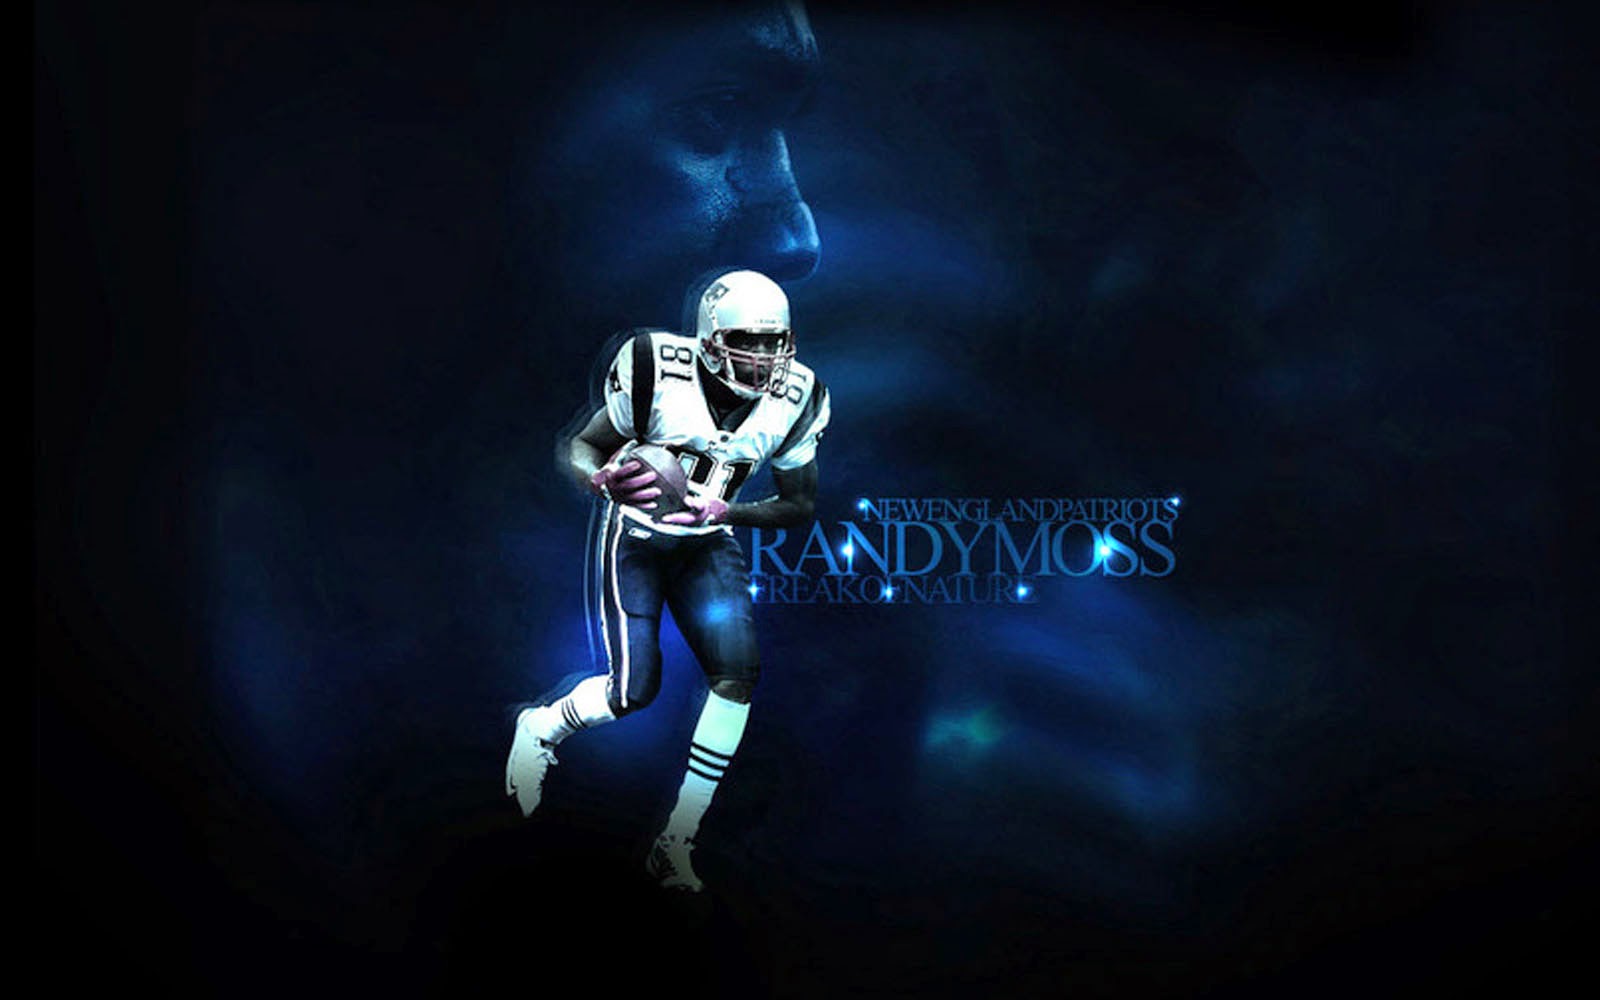 Moss Desktop Wallpaper American Football Player Randymoss